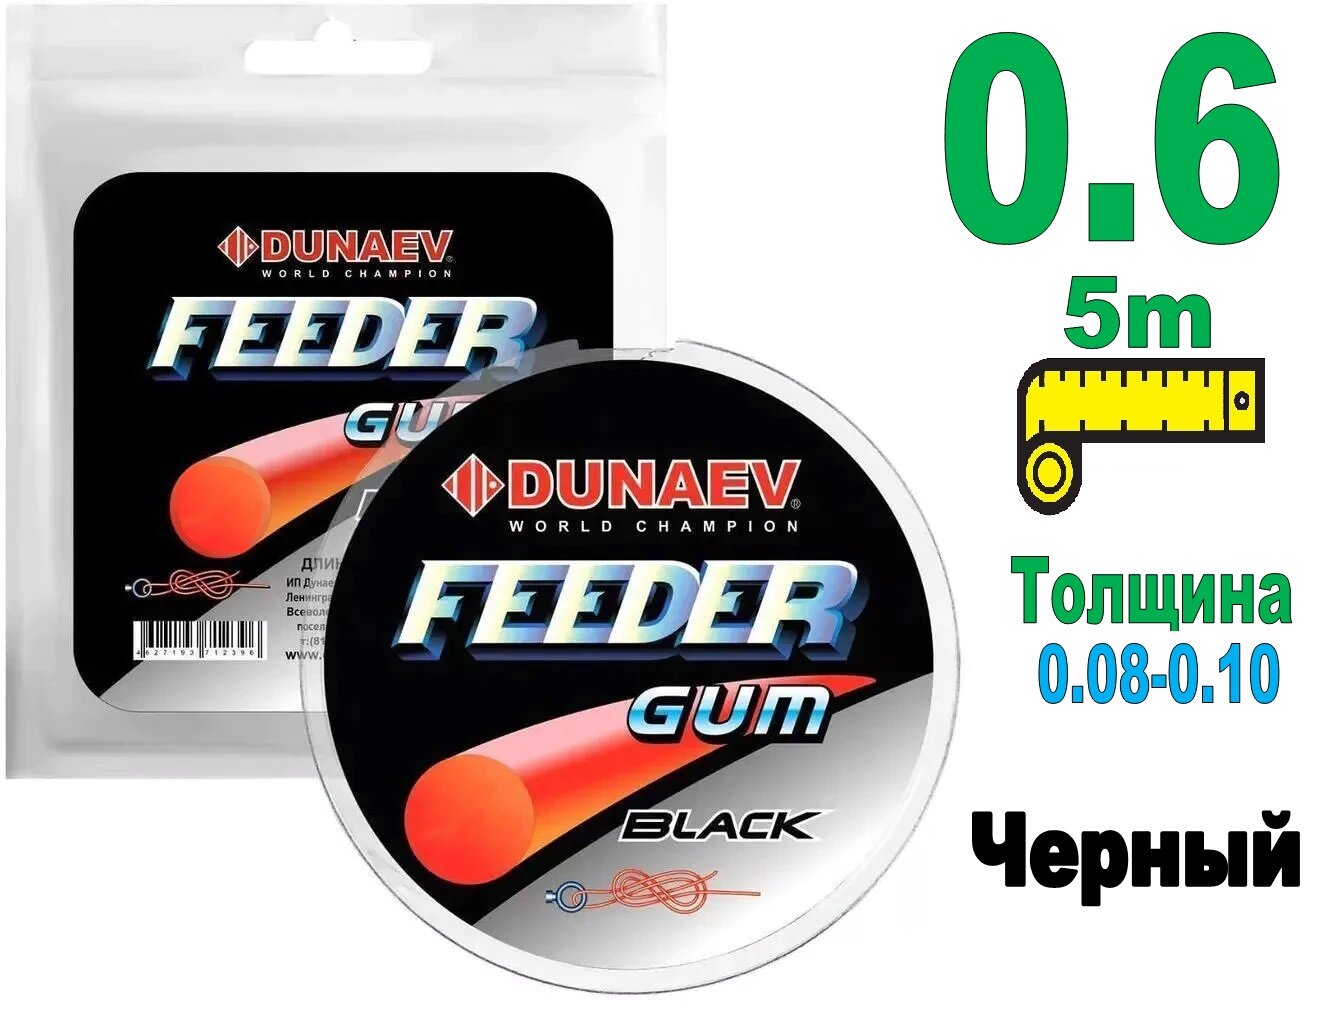 Фидергам Дунаев Dunaev feeder gum 5м Black 0.6